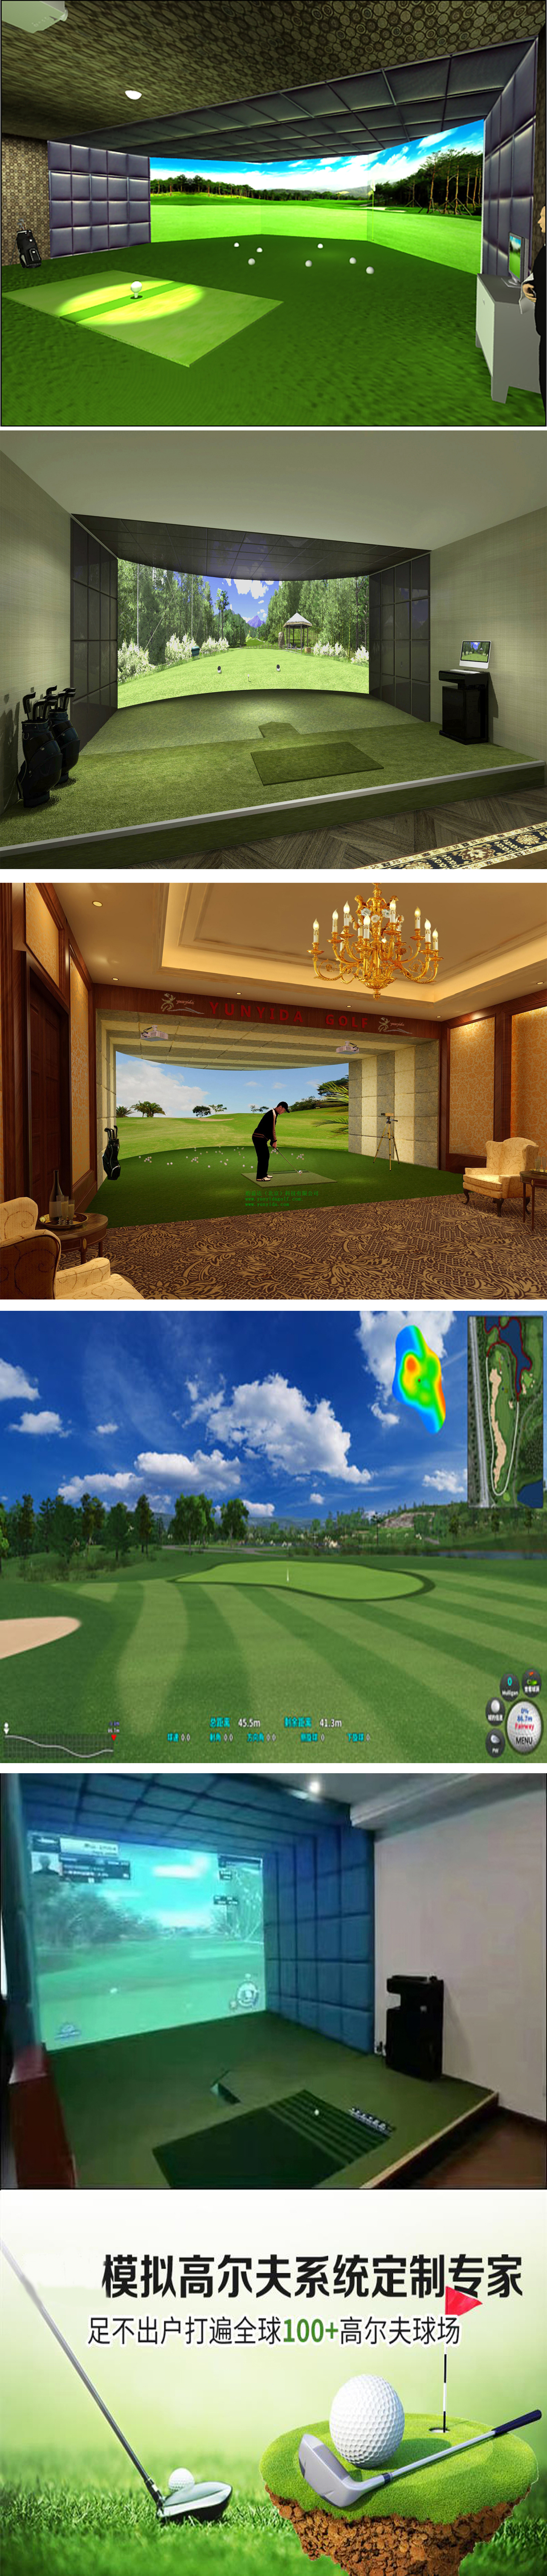 室内模拟高尔夫  04.jpg